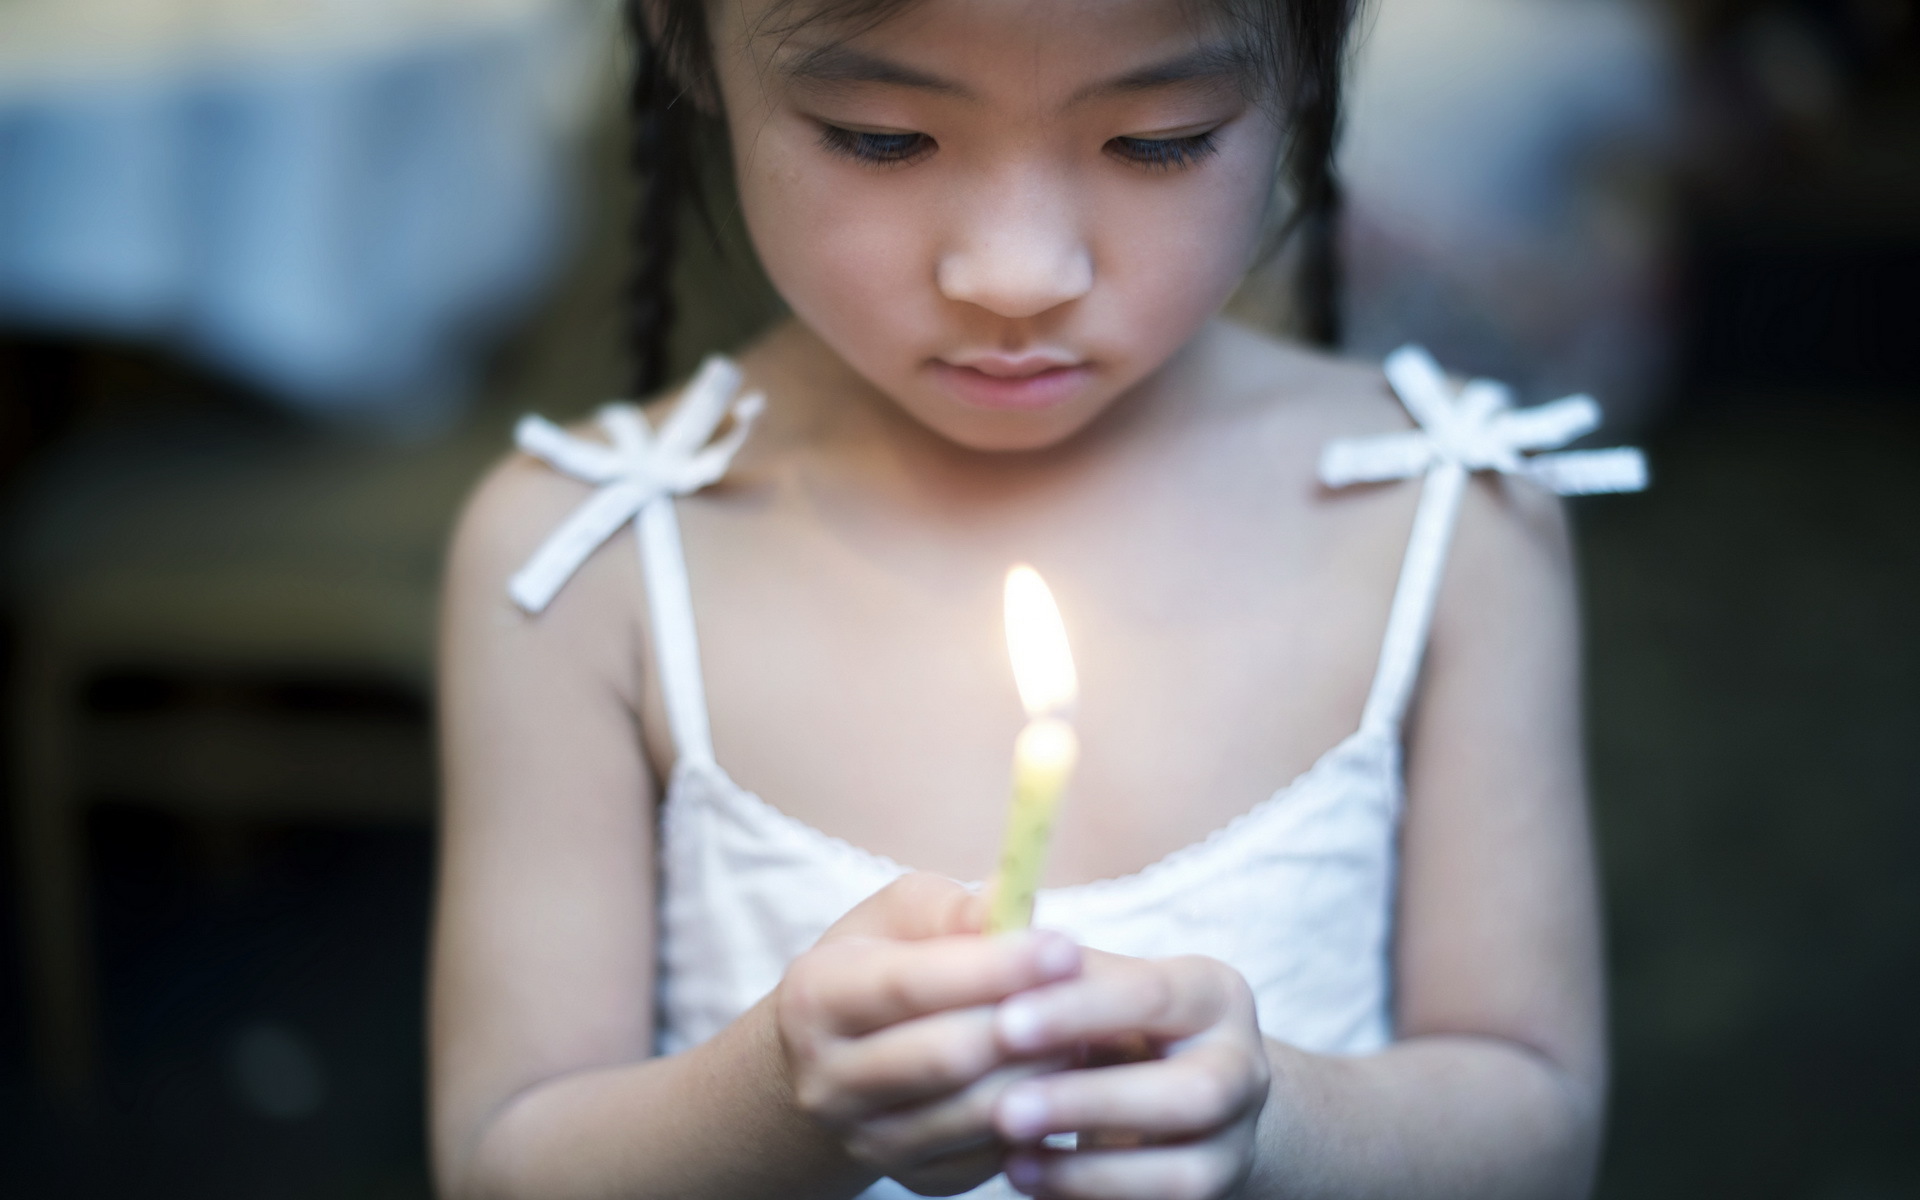 点燃蜡烛的小女孩在圣诞晚餐 库存图片. 图片 包括有 圣诞节, 女孩, 户内, 庆祝, 少许, 膳食, 愉快 - 57677577